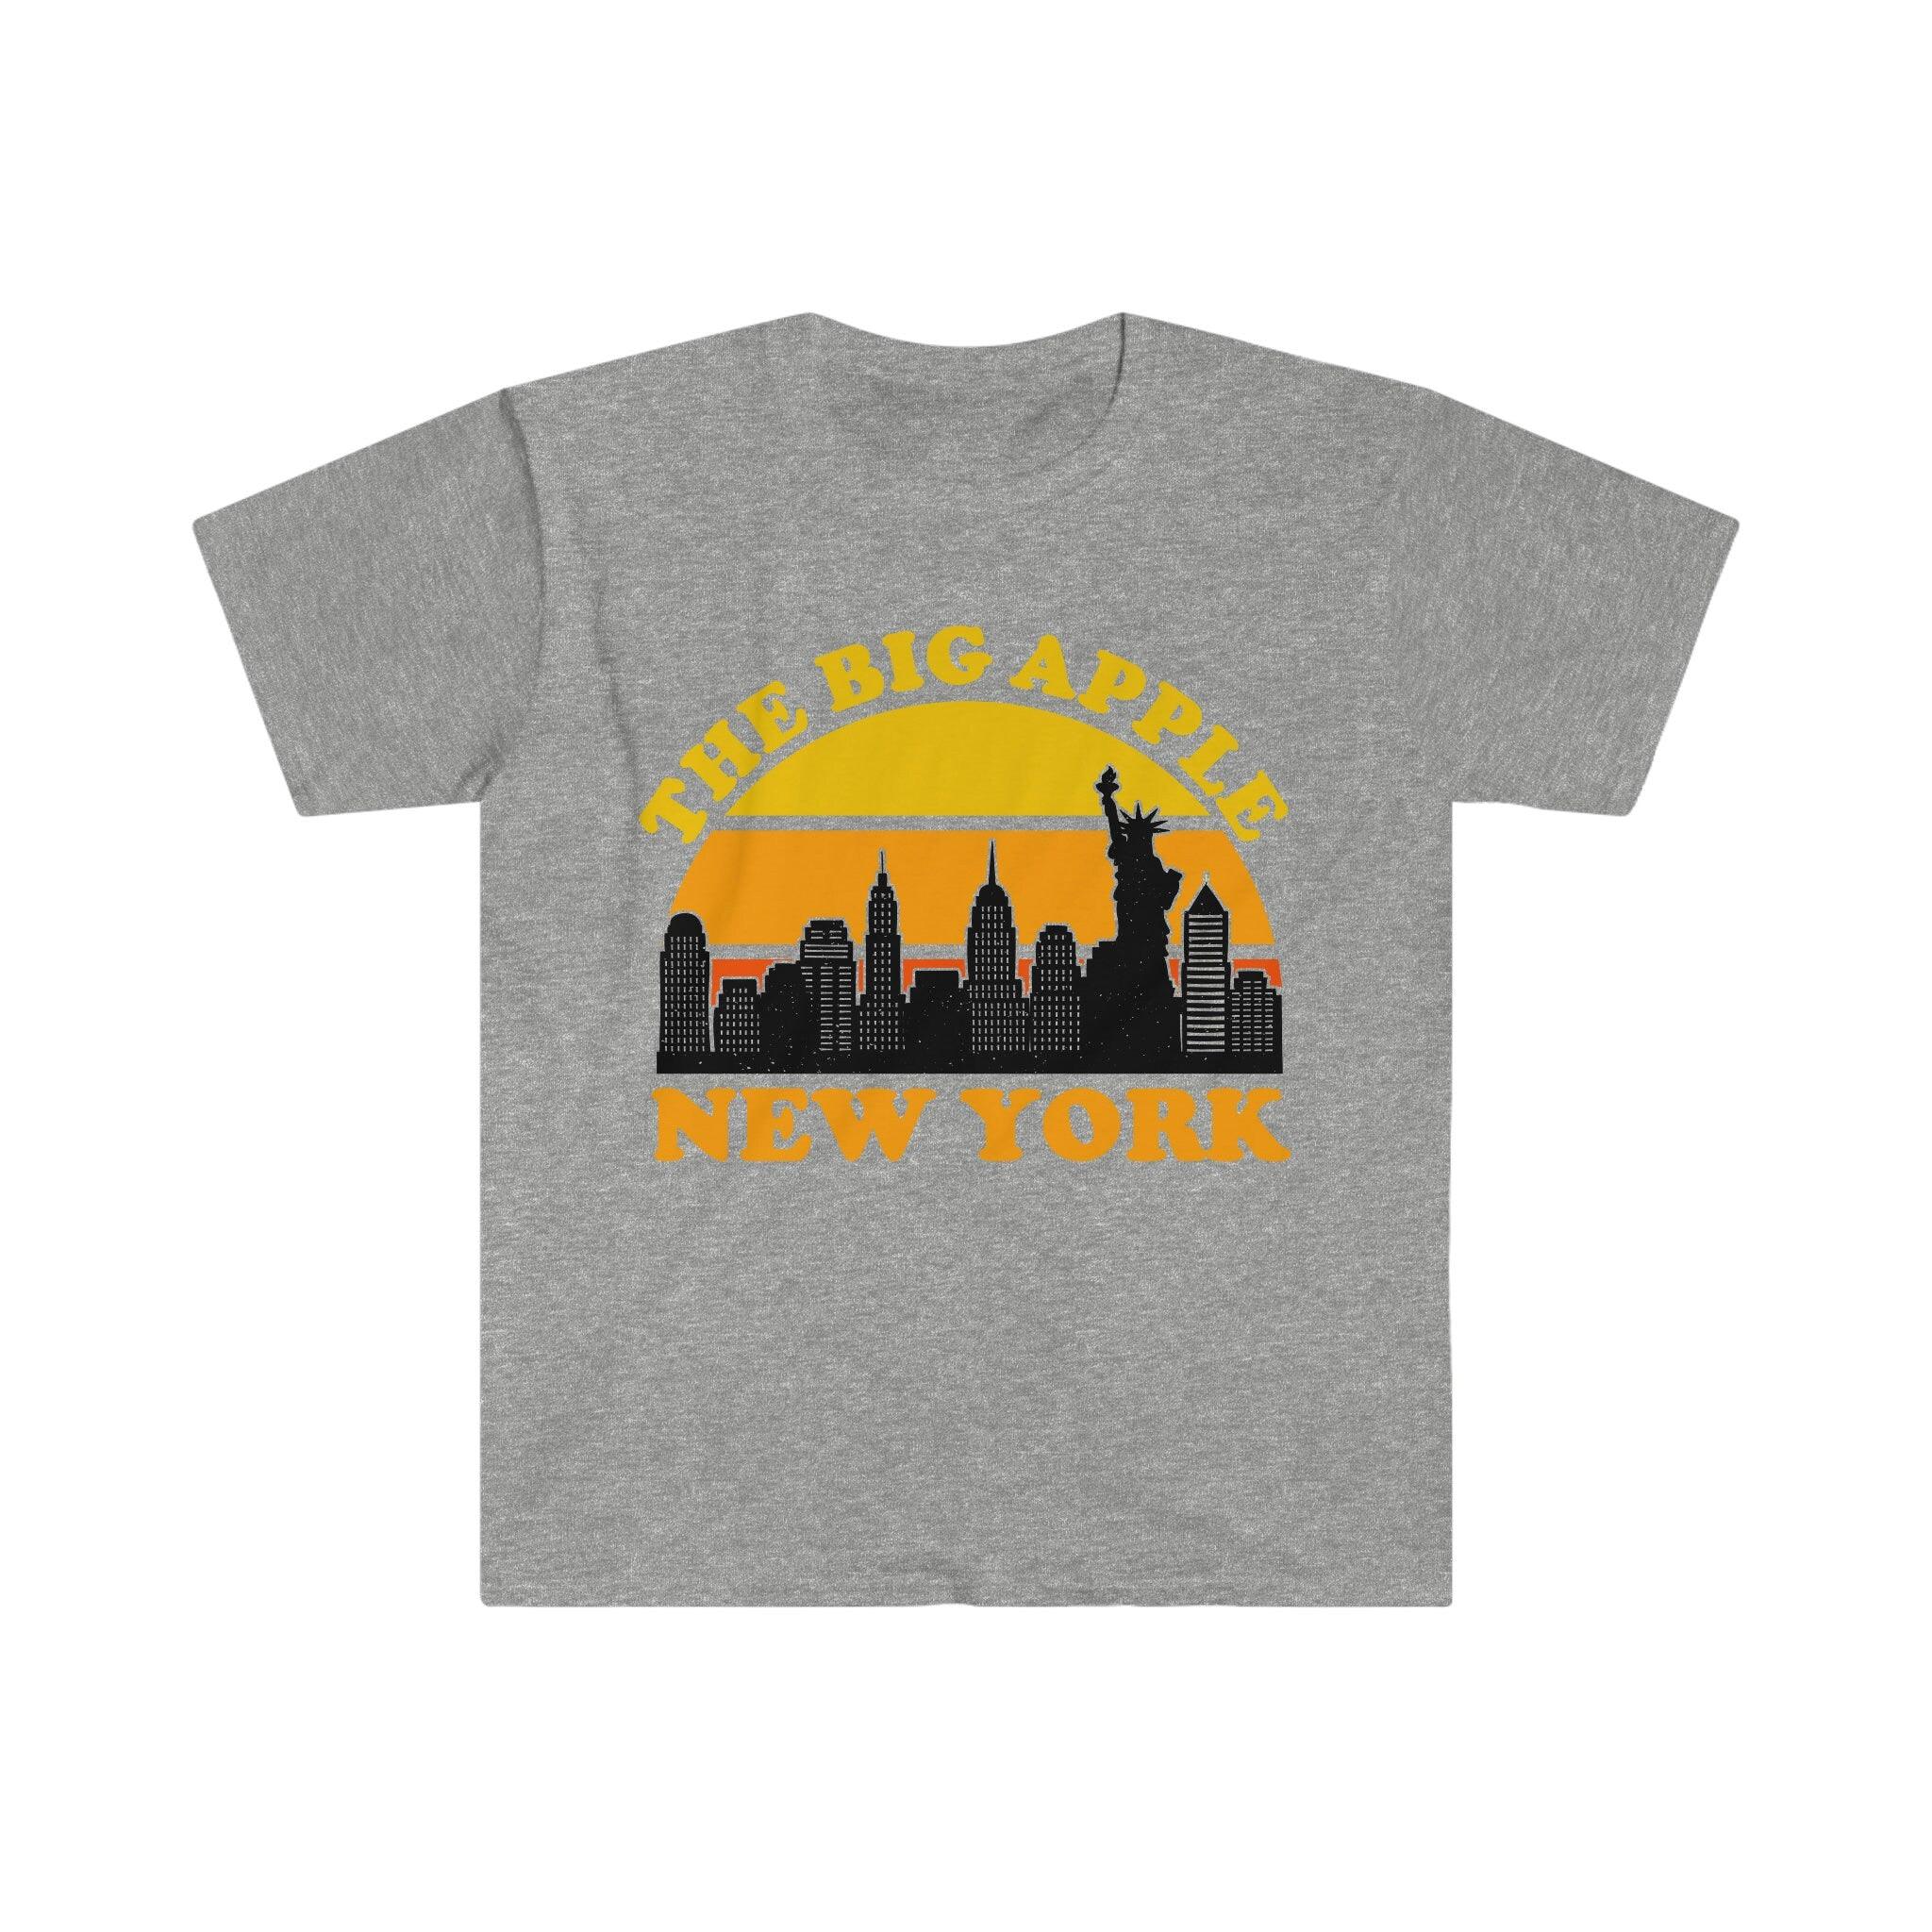 Το Μεγάλο Μήλο Νέα Υόρκη | Ρετρό μπλουζάκια Sunset, αναμνηστικό μπλουζάκι στον ορίζοντα της Νέας Υόρκης, κοστούμι για πάρτι της Νέας Υόρκης, Visit Trip Travel NY, γέφυρα του Μπρούκλιν, στον ορίζοντα της πόλης, Μανχάταν, Νέα Υόρκη, πόλη της Νέας Υόρκης, τέχνη της πόλης της Νέας Υόρκης, δώρο από τη Νέα Υόρκη, στάμπα της Νέας Υόρκης, στον ορίζοντα της Νέας Υόρκης, NYC, NYC δώρο, NYC skyline, άγαλμα της ελευθερίας, Tee, μπλουζάκια - plusminusco.com